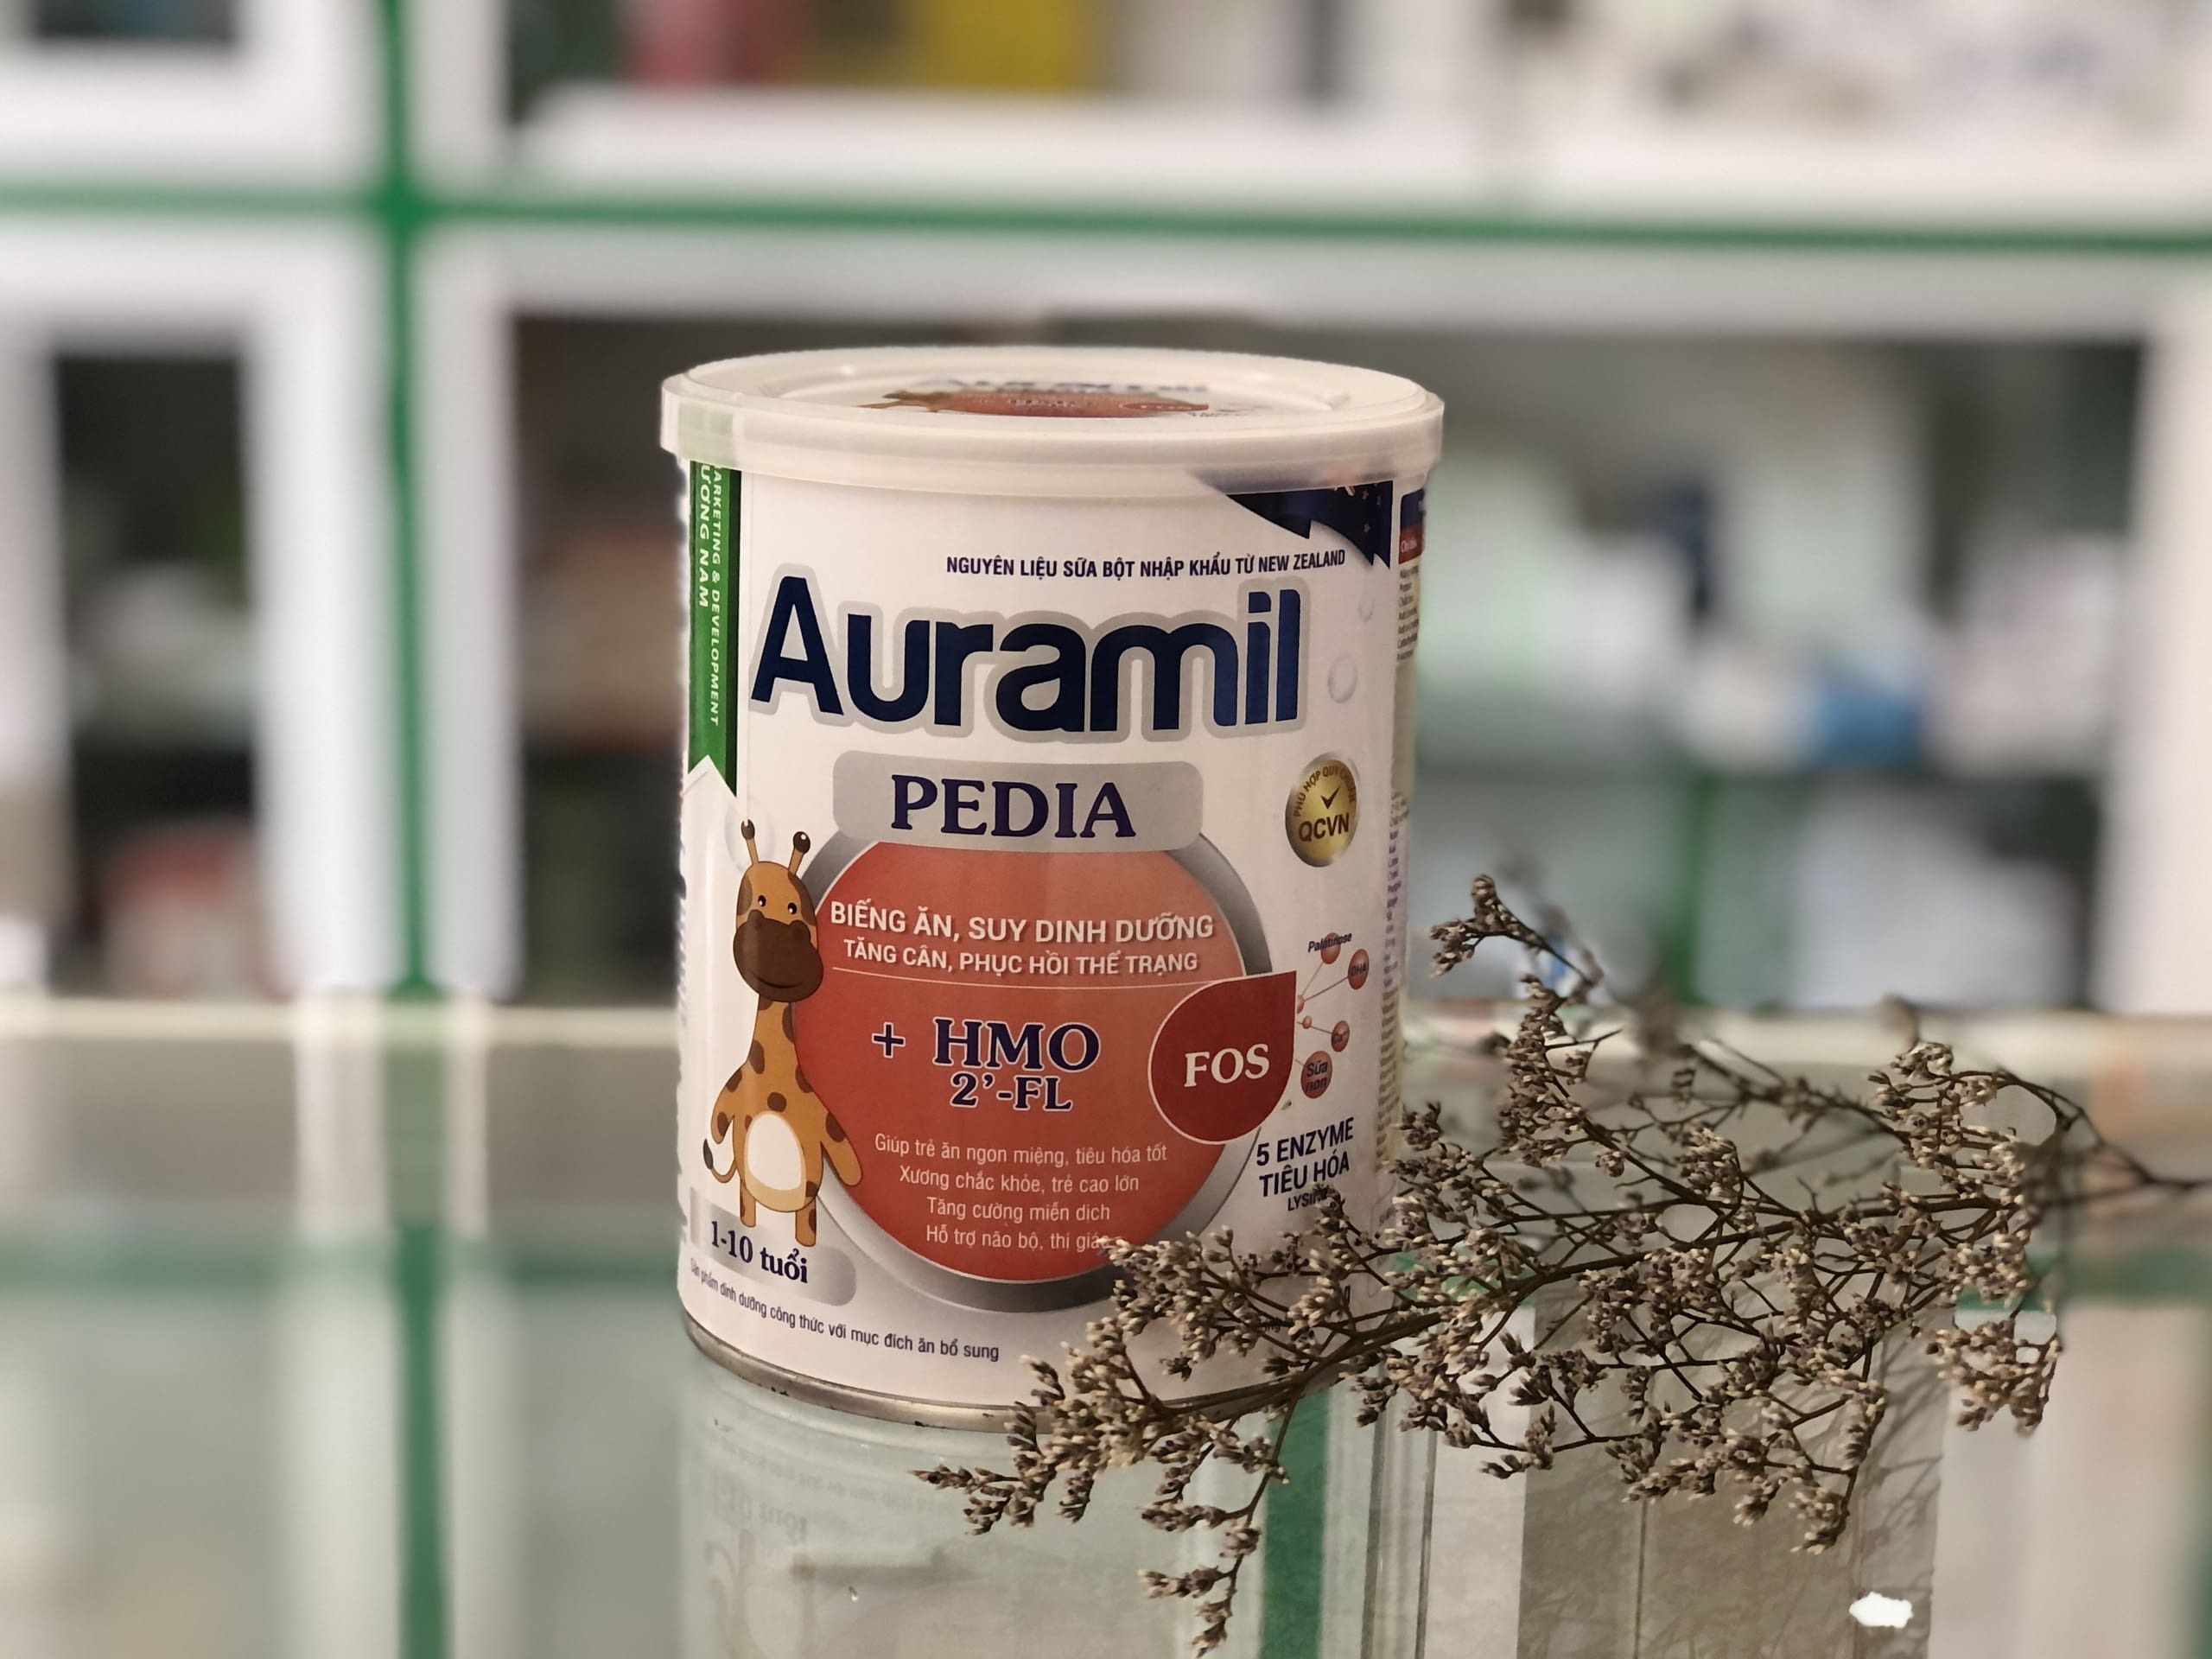 Sữa Auramil Pedia là sản phẩm dinh dưỡng dành cho trẻ từ 1-10 tuổi. Sản phẩm bổ sung năng lượng, protein và vi chất dinh dưỡng, giúp trẻ tăng cân, hồi phục thể trạng và phát triển khoẻ mạnh.